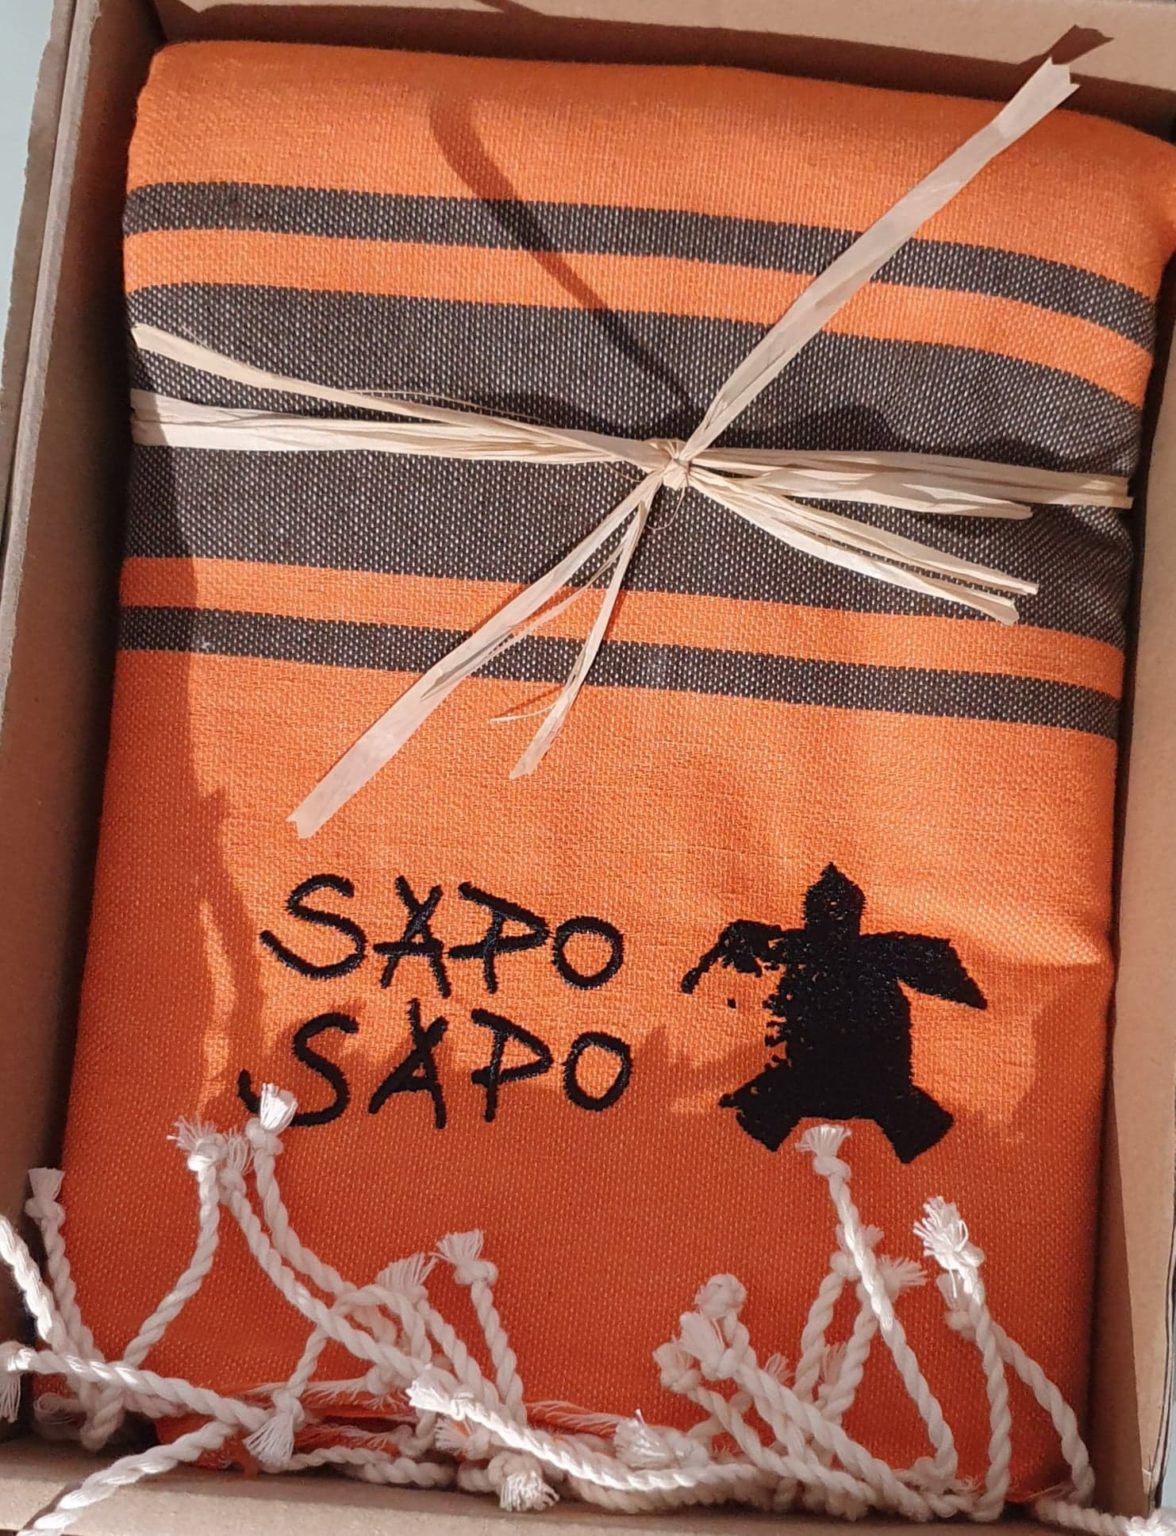 Emballage Fouta Tortuguero - Sapo Sapo